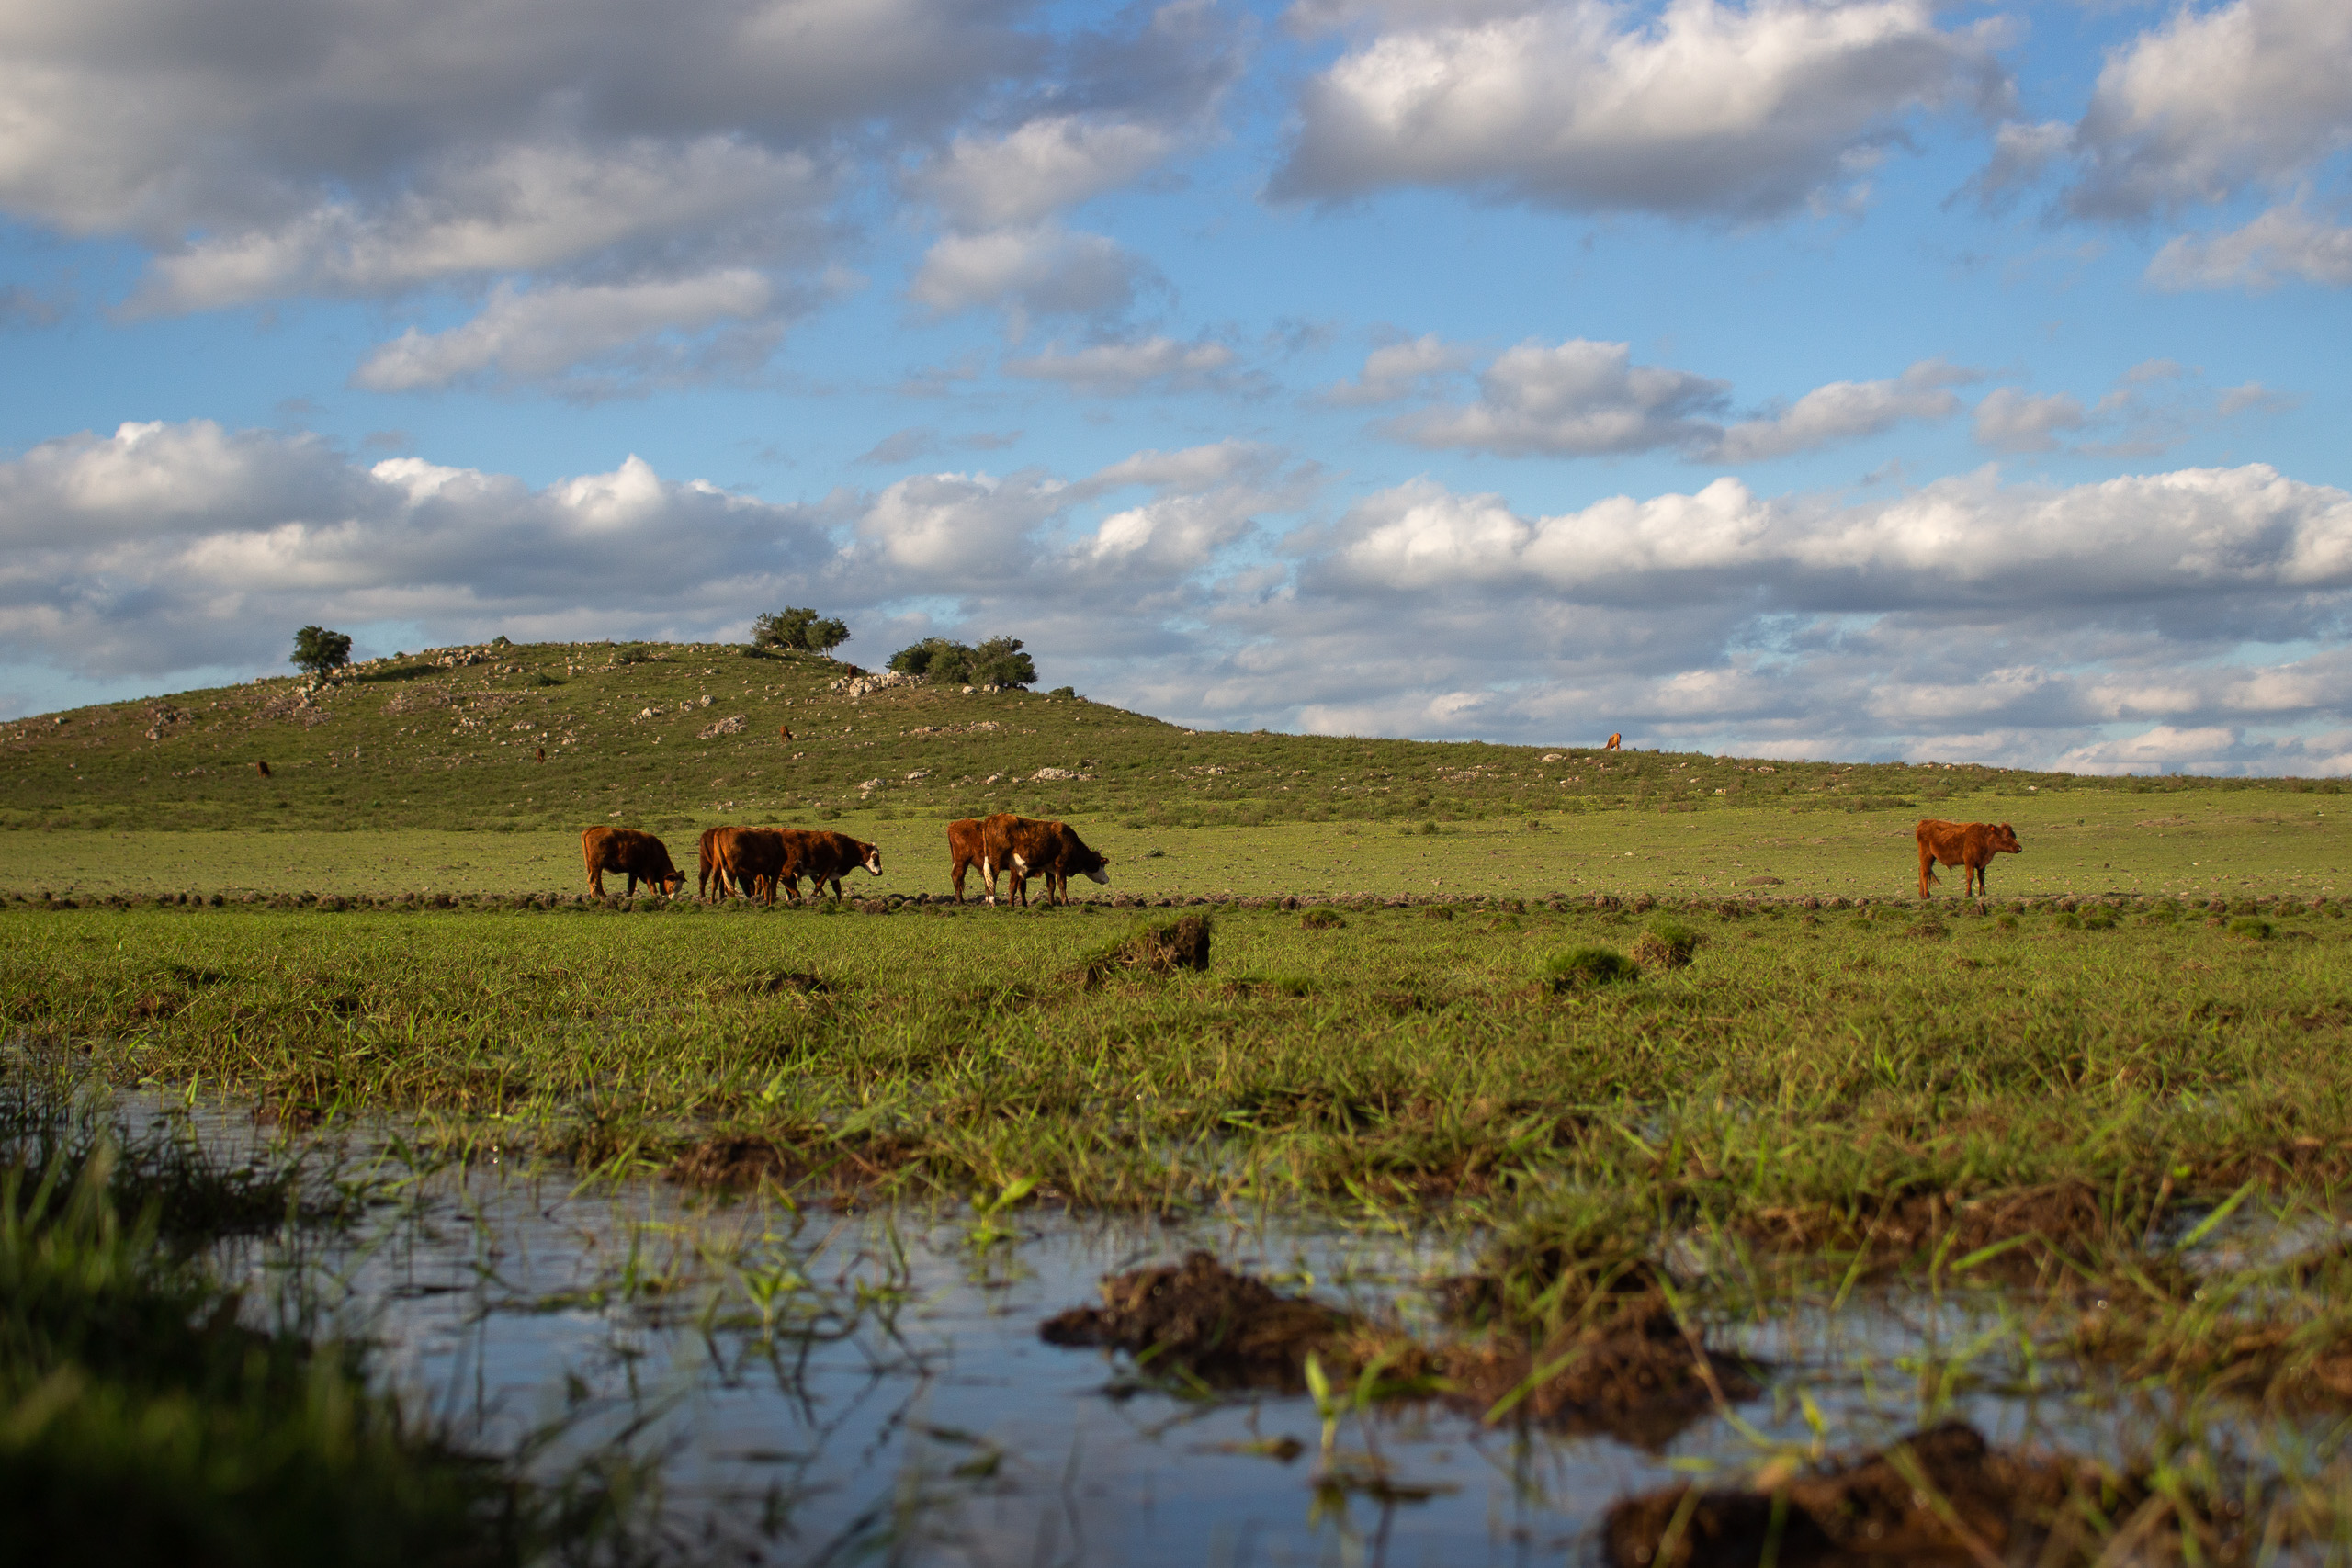 cattle in a damp field